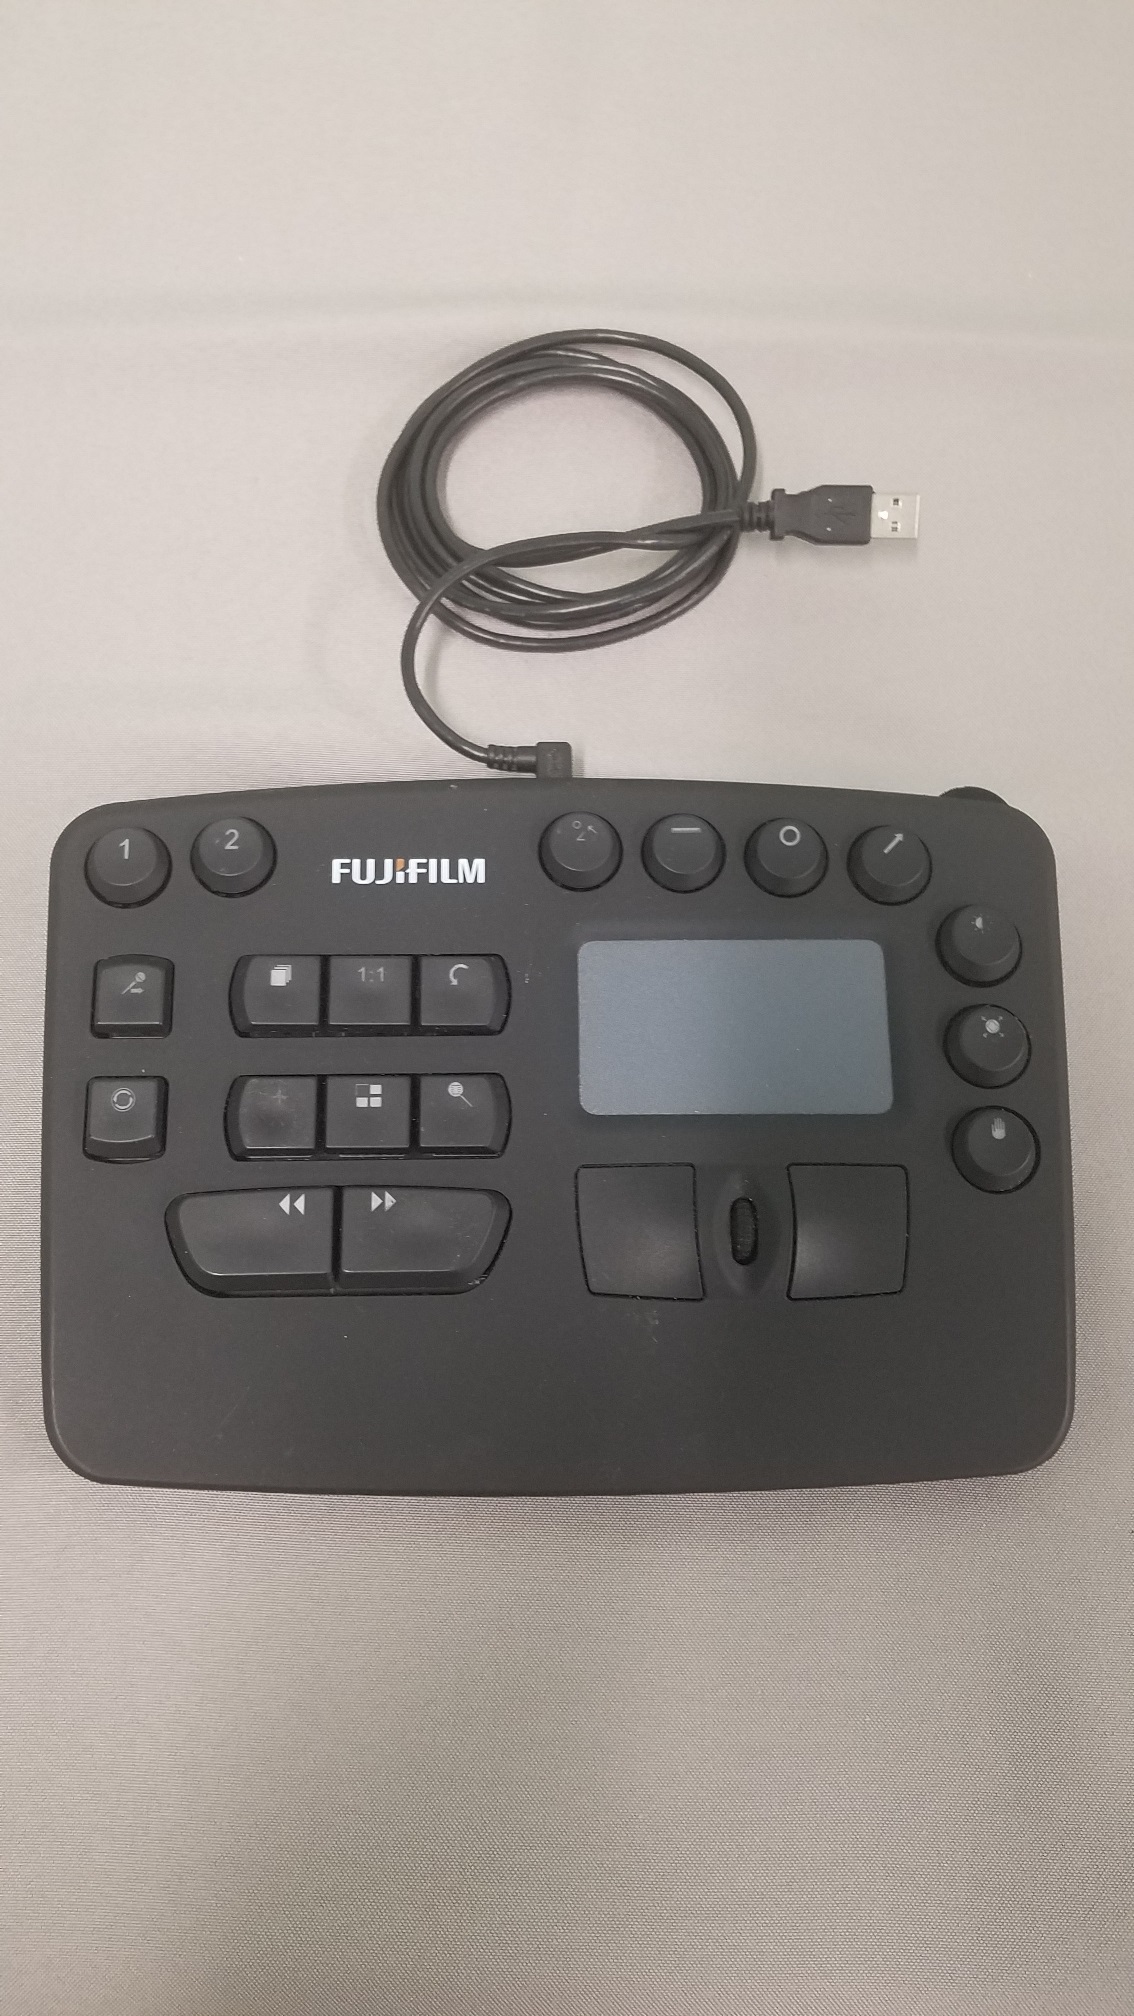 FUJIFILM Custom Workflow Keypad